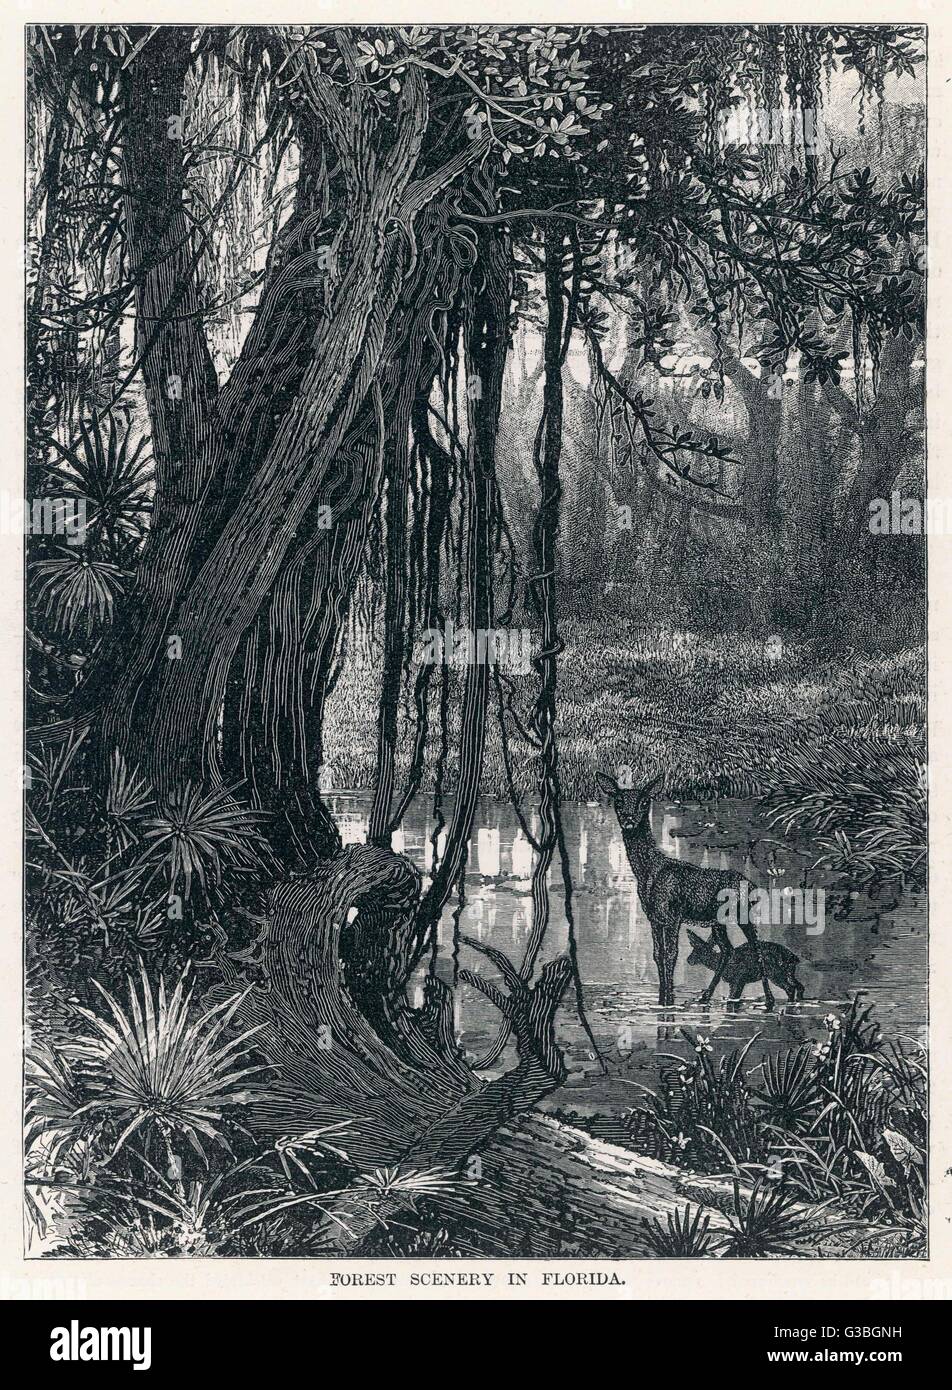 Un cervo e il suo sguardo giovane dubiously a noi come noi lo sguardo verso la foresta paludosa scenario della Florida, che non è affatto come Miami Beach. Data: 1875 Foto Stock